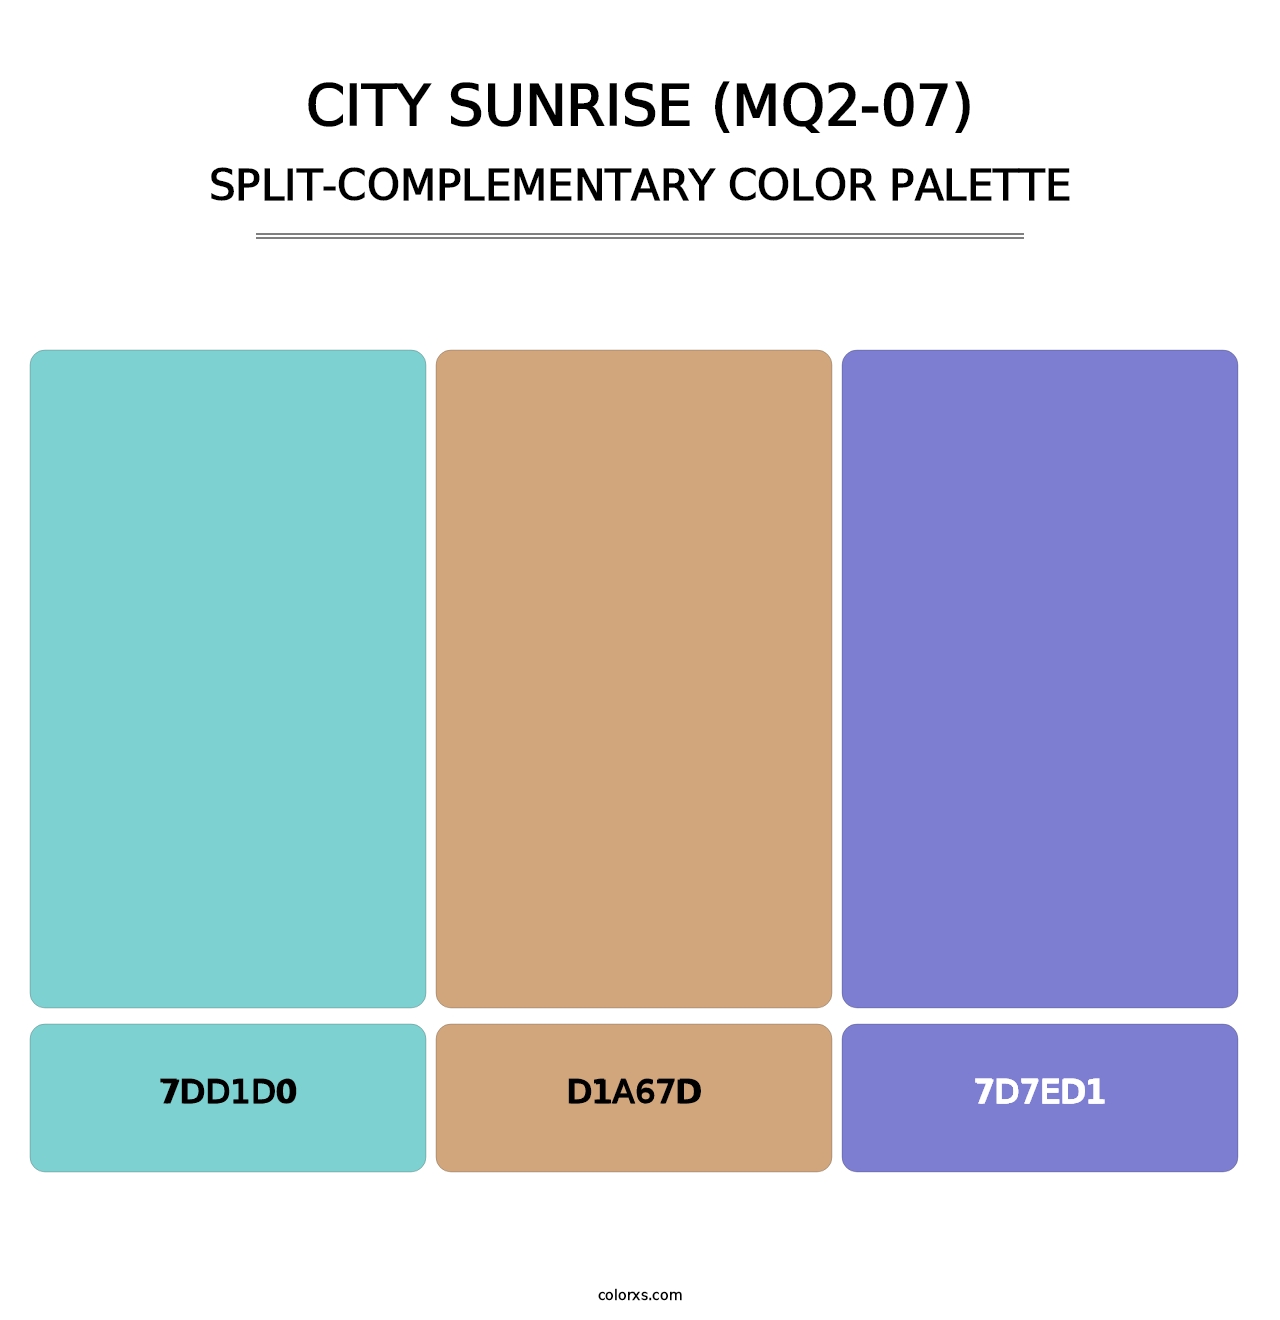 City Sunrise (MQ2-07) - Split-Complementary Color Palette